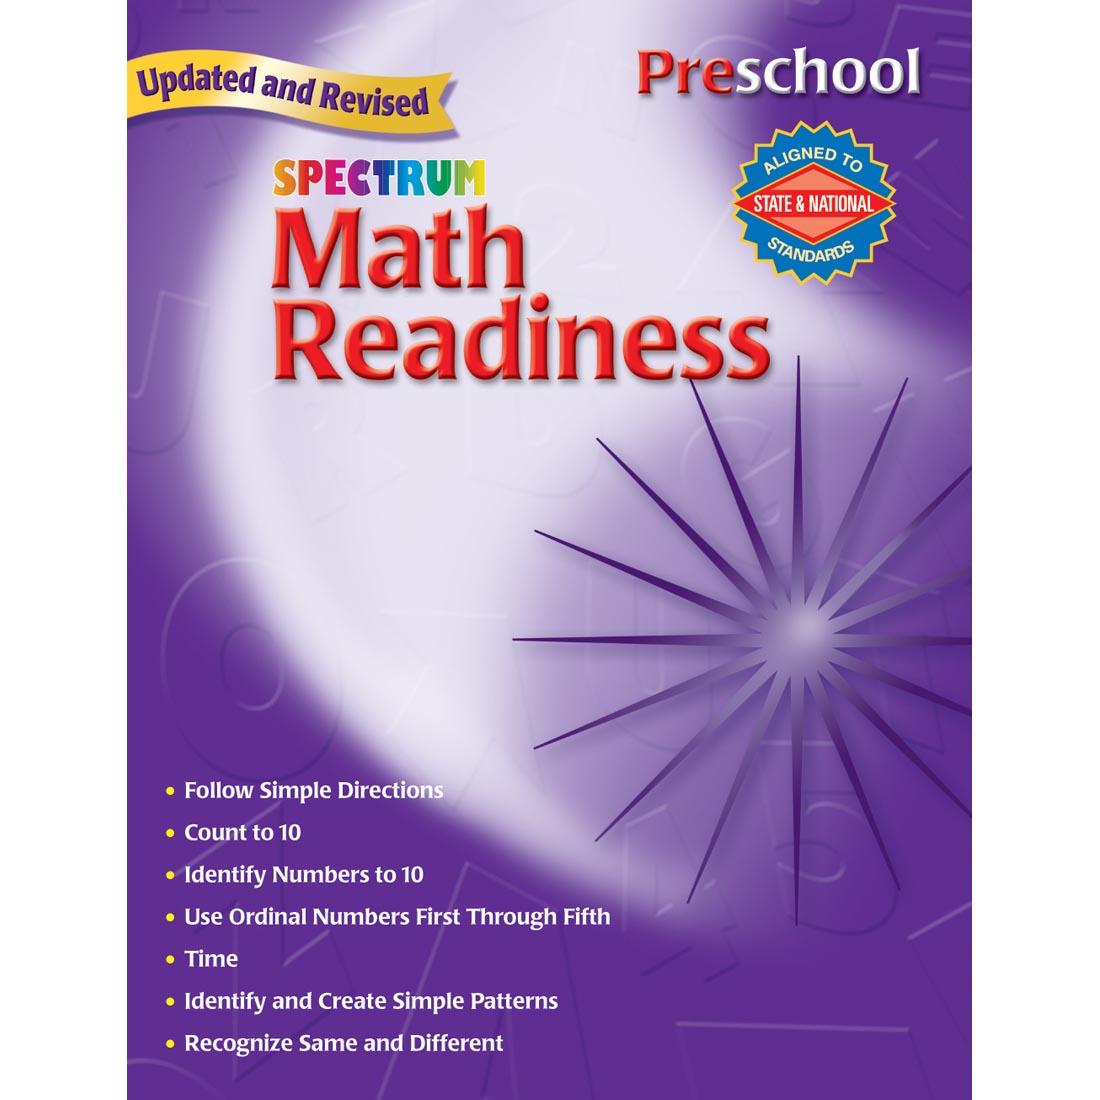 Preschool Spectrum Math Readiness by Carson Dellosa